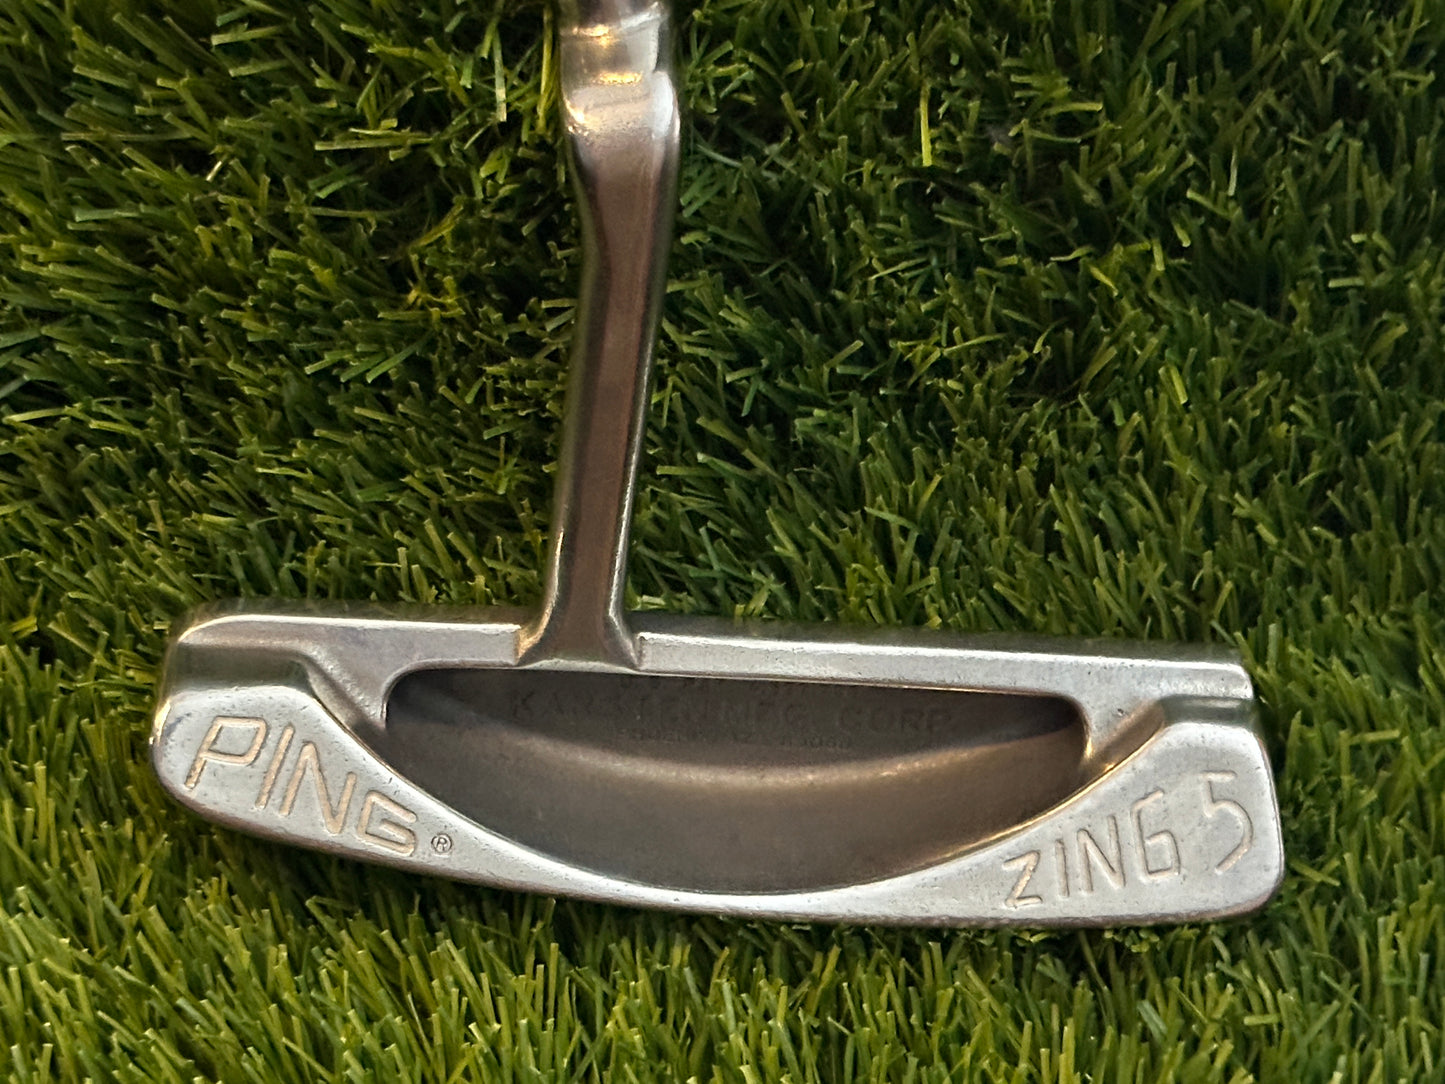 Ping Zing 5 Stunning Blade Putter